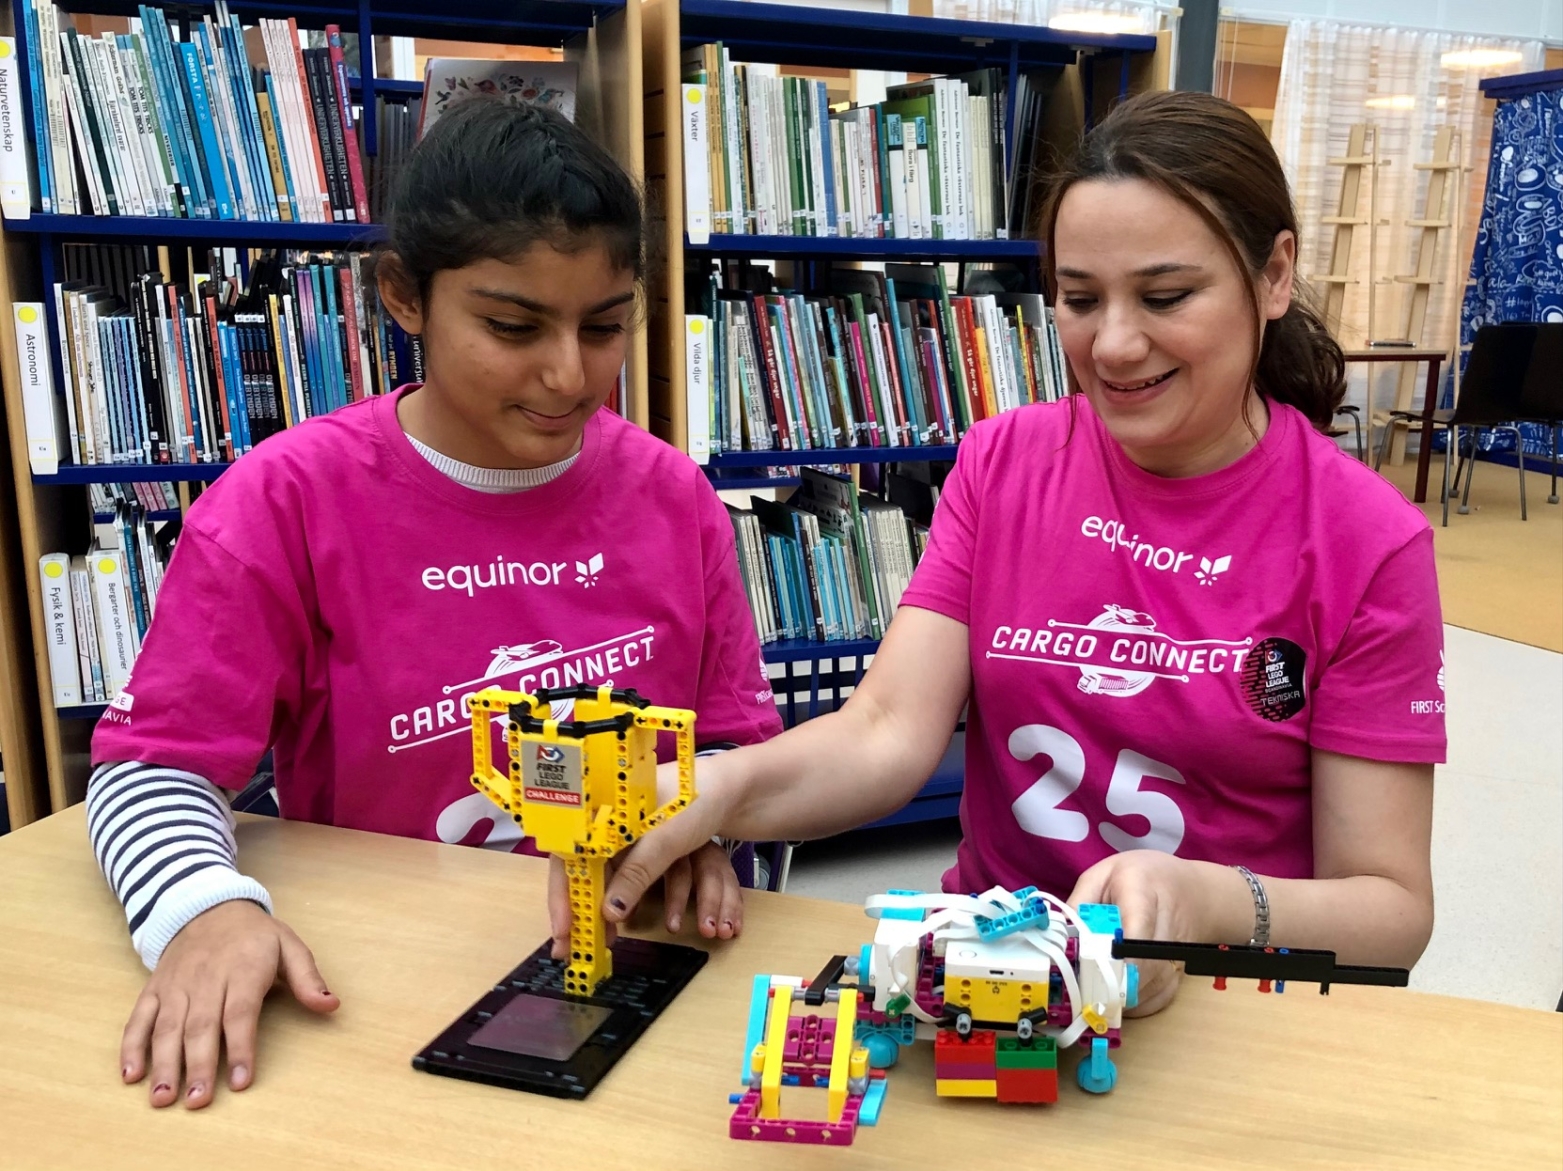 en flicka och en kvinna i rosa t-shirts tittar på en robot och en pokal